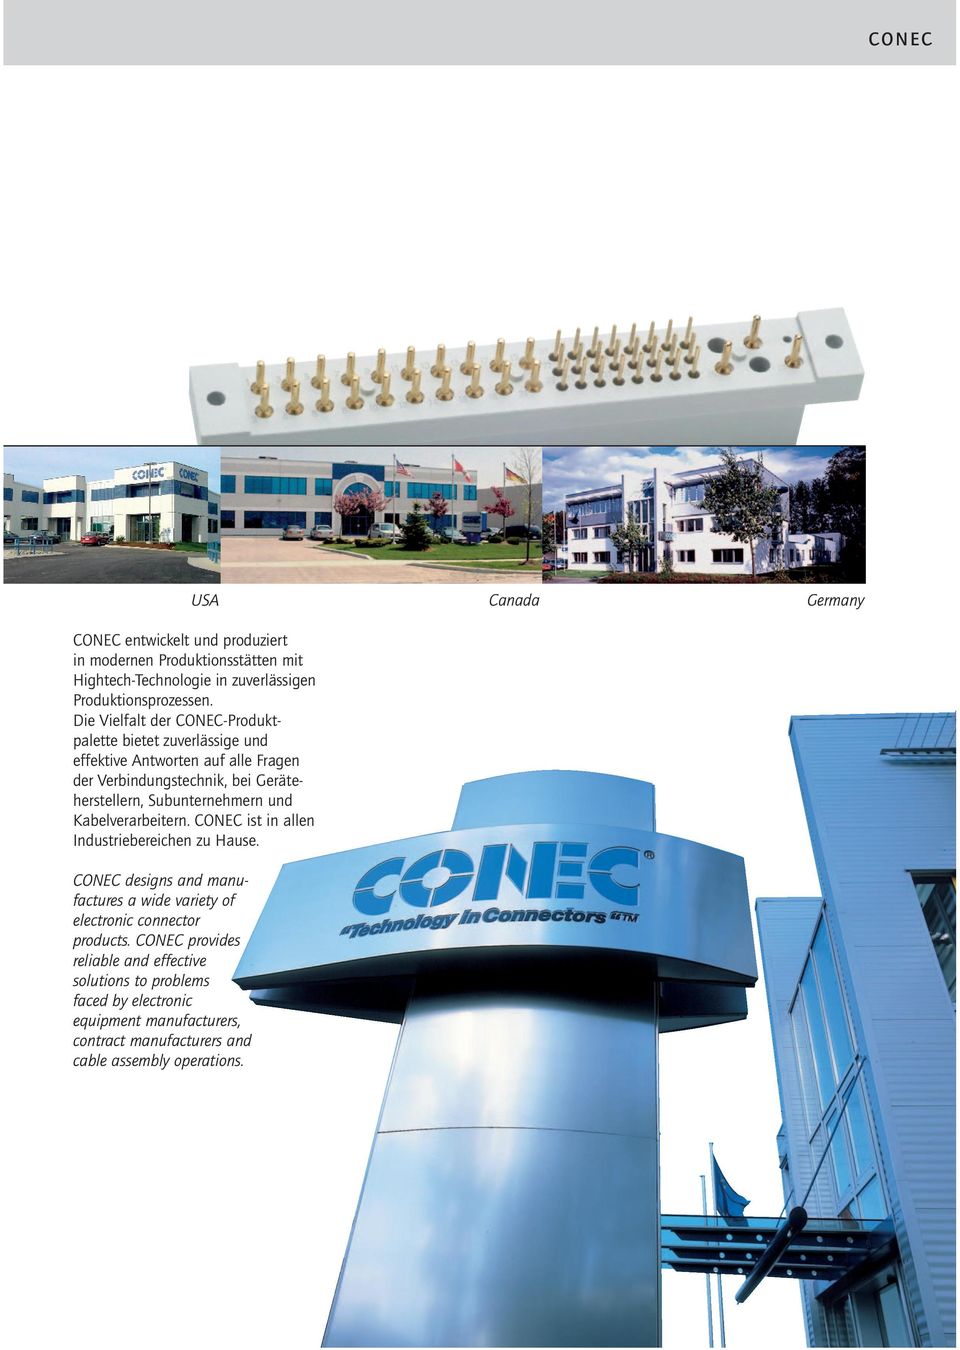 Subunternehmern und Kabelverarbeitern. CONEC ist in allen Industriebereichen zu Hause.